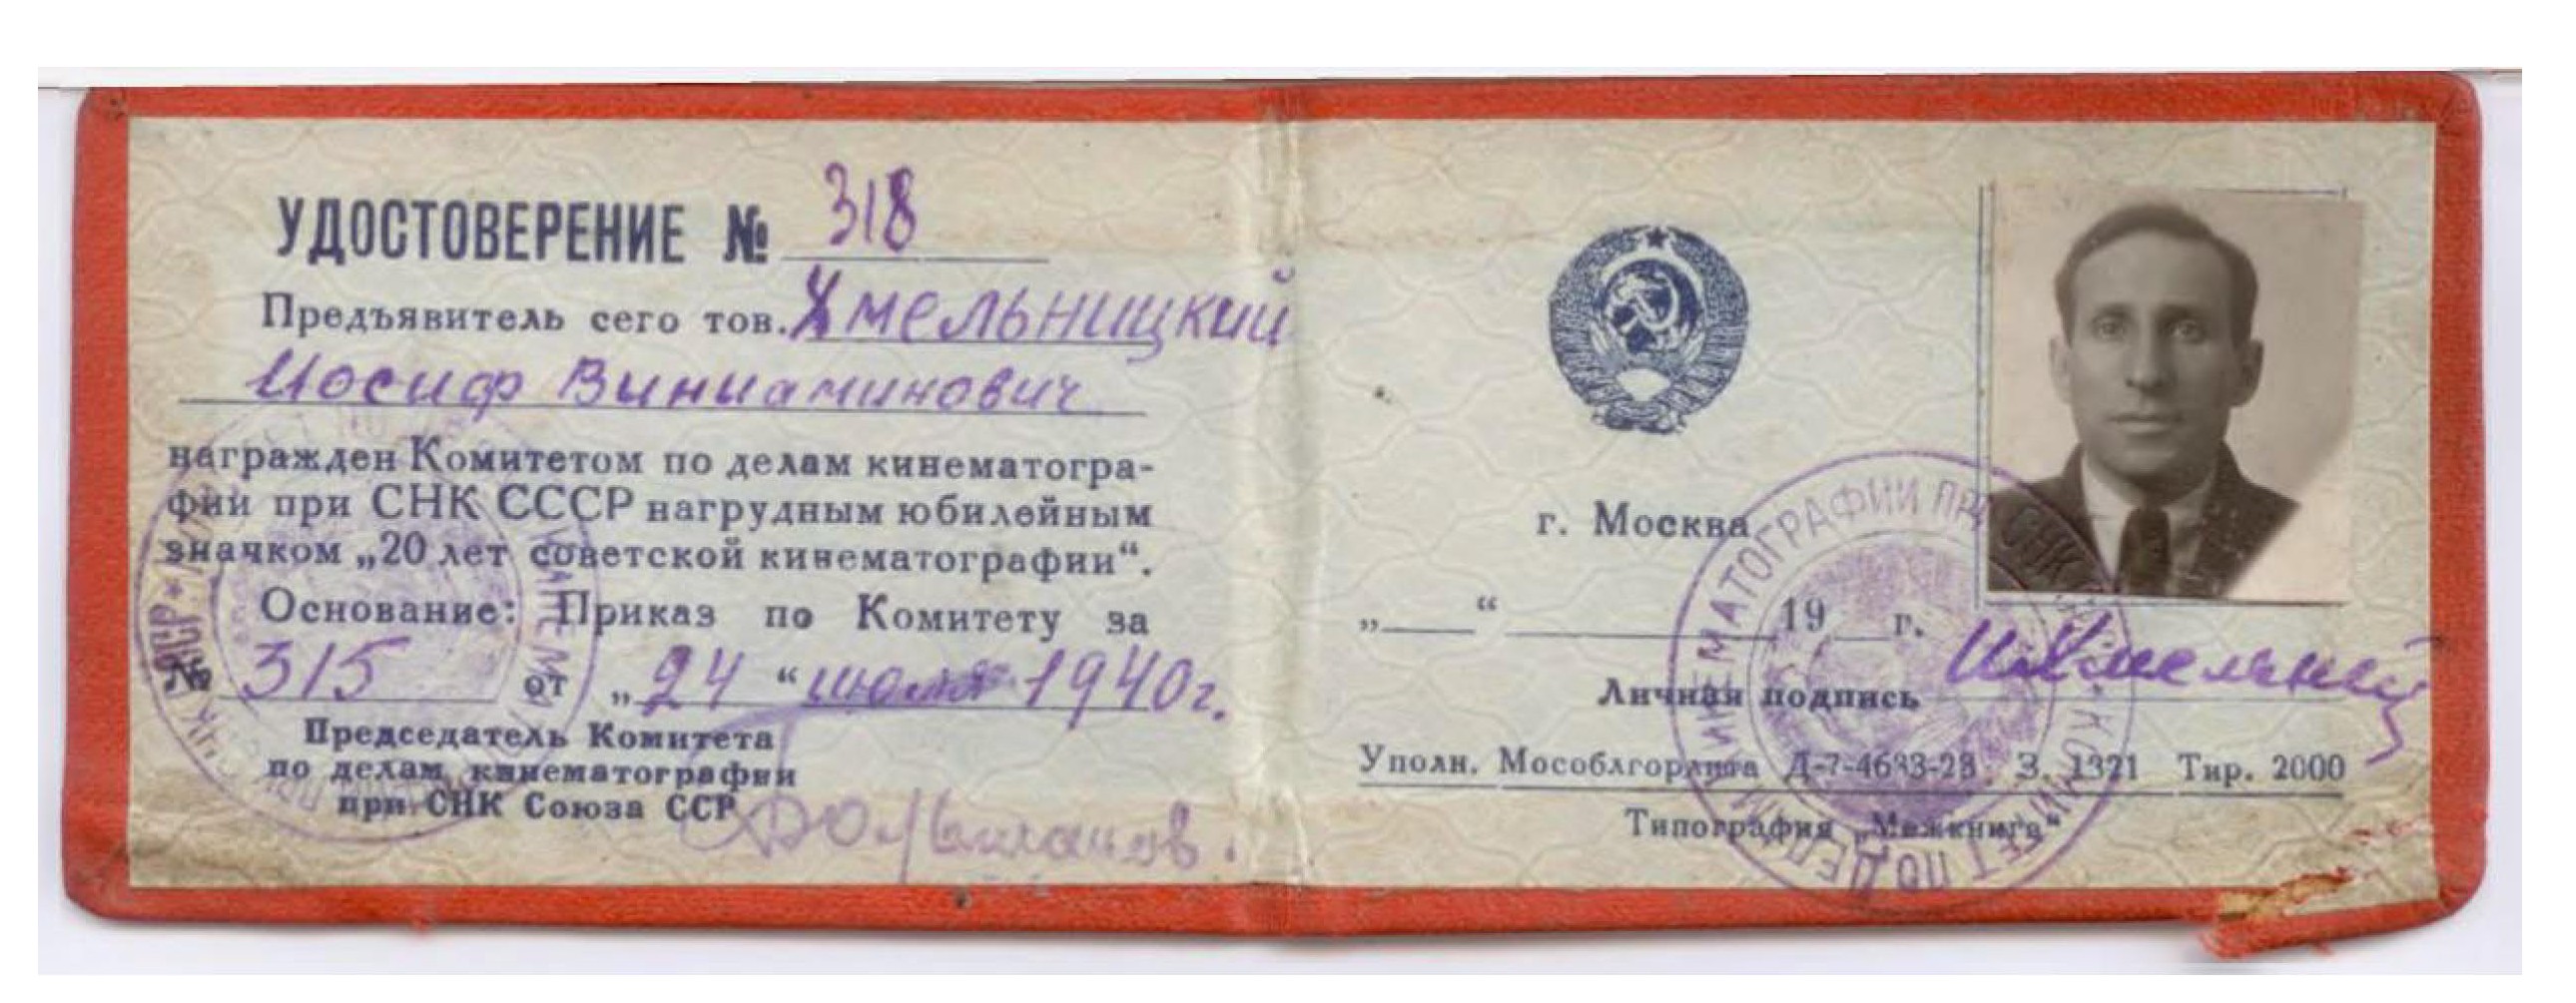 Экспонат #22. Удостоверение к нагрудному юбилейному значку «20 лет Советской кинематографии» от  24 июля 1940 года